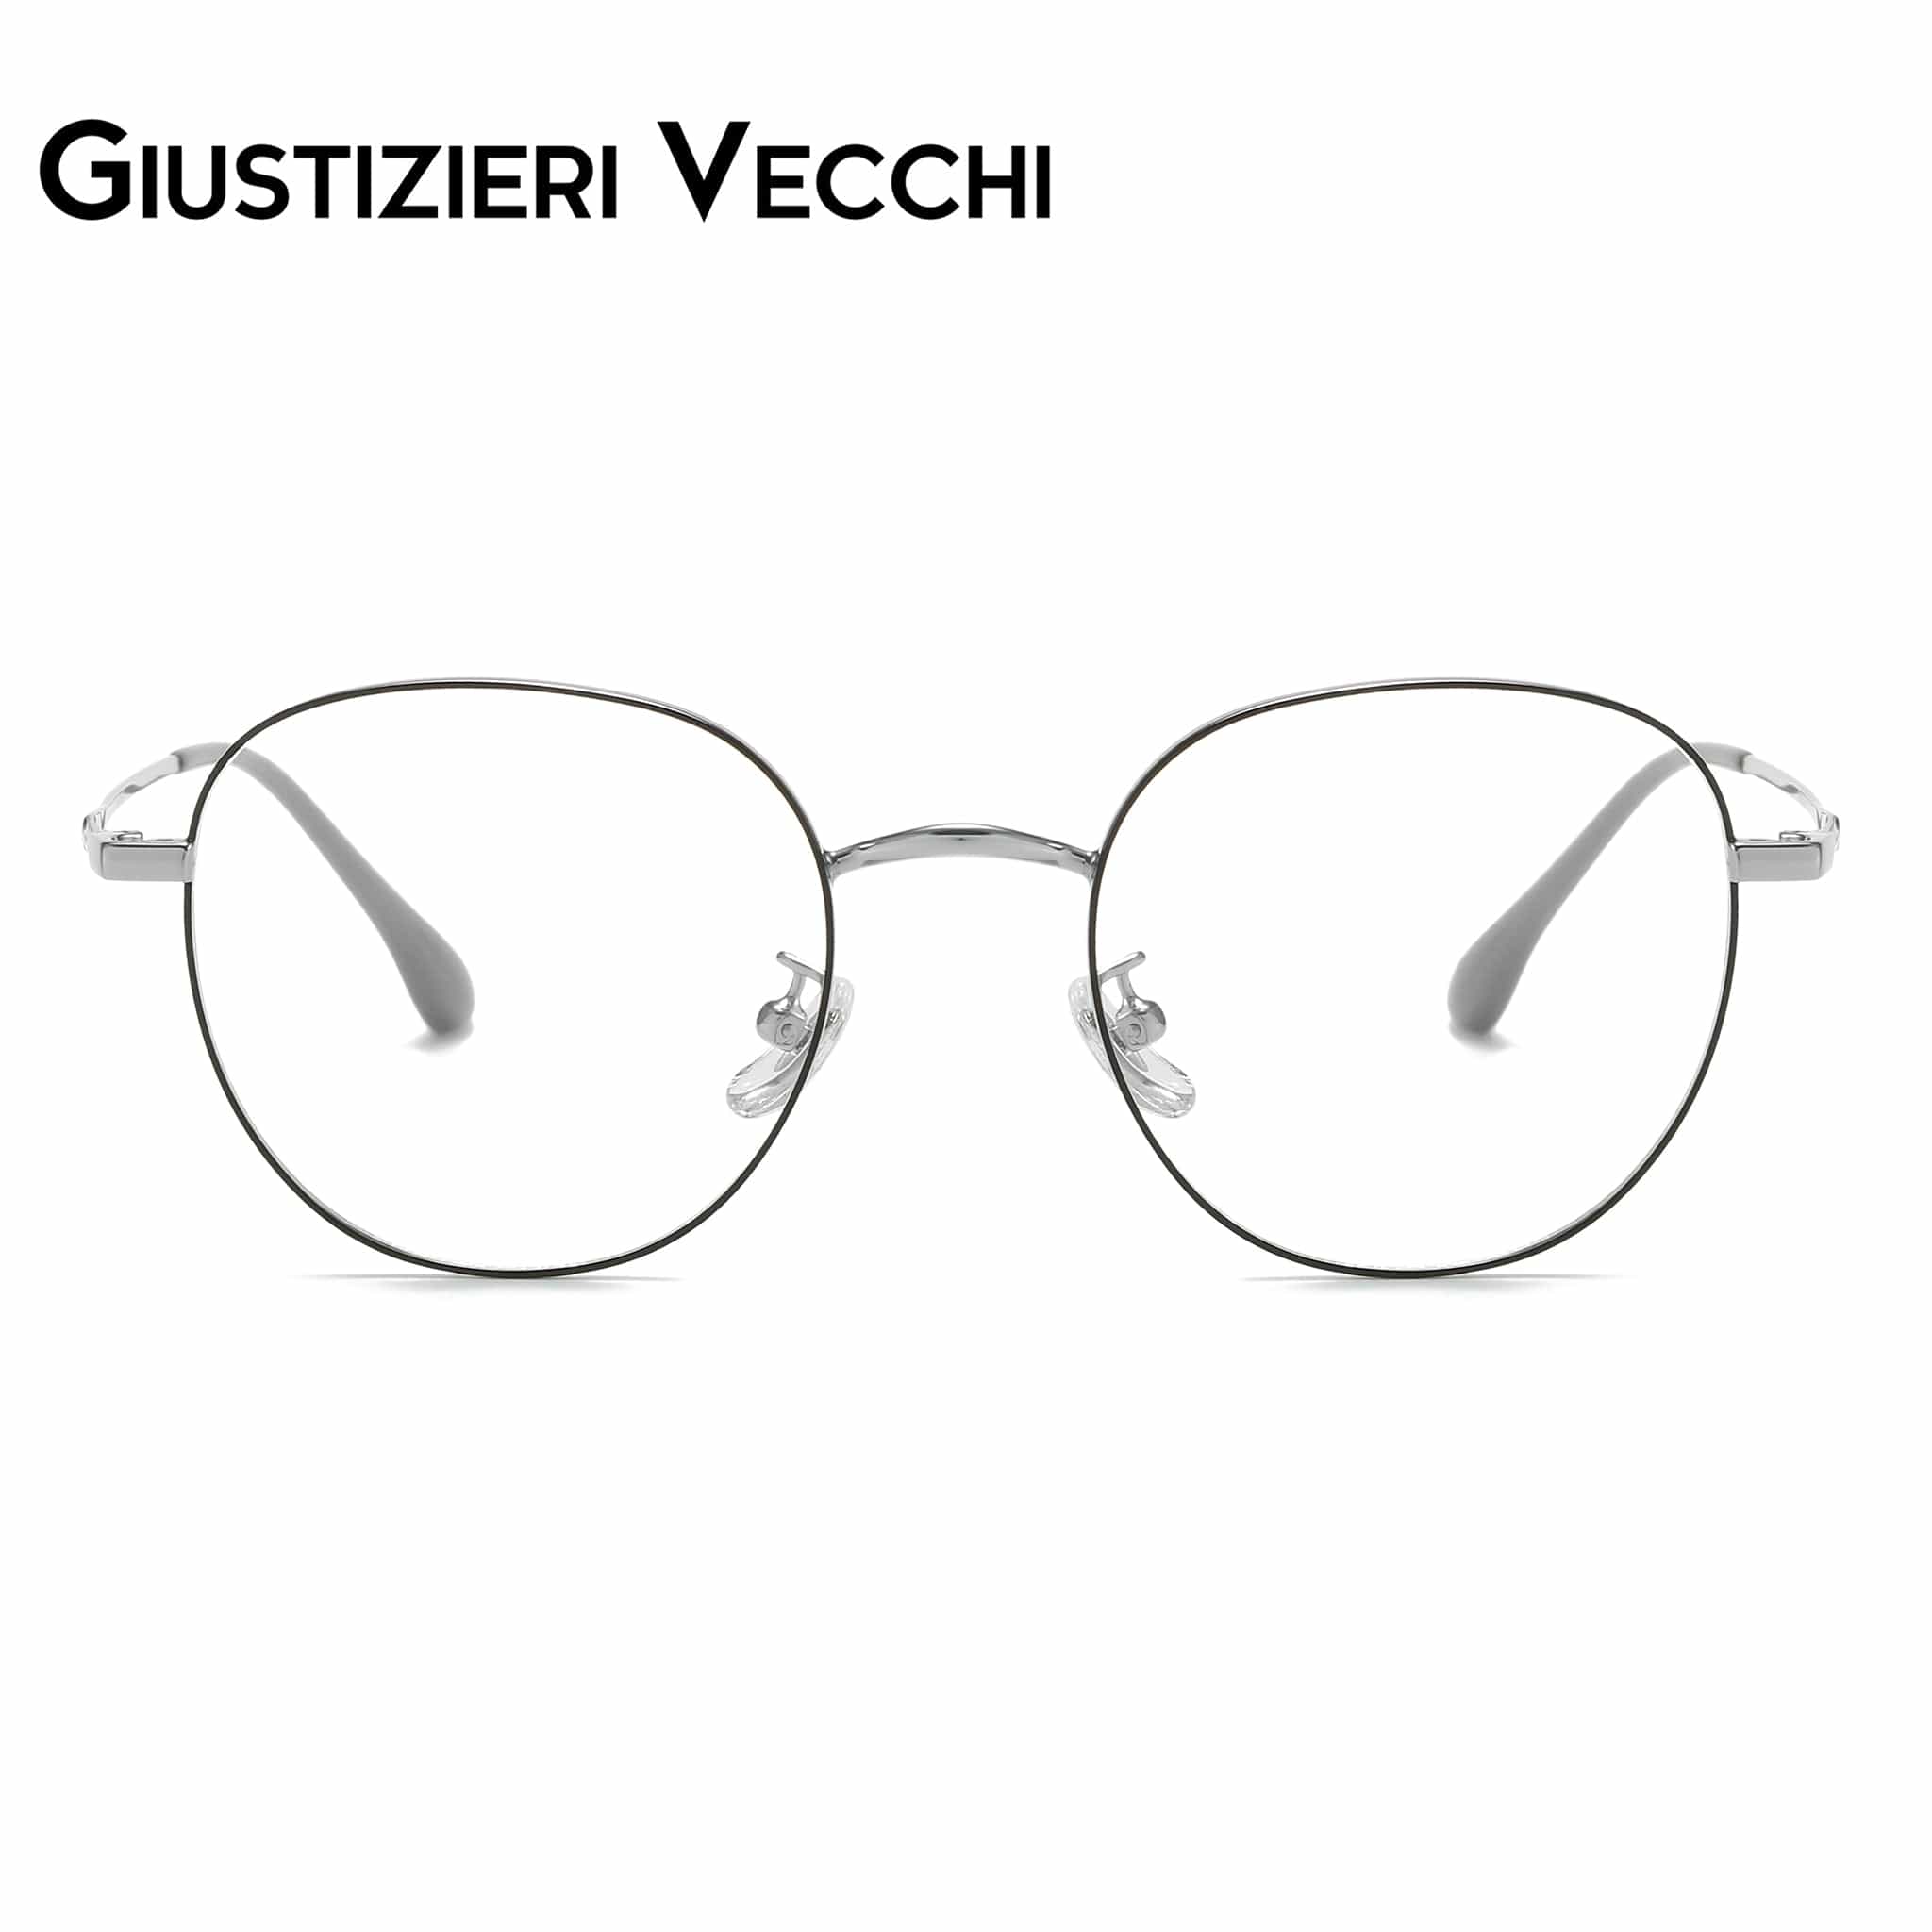 GIUSTIZIERI VECCHI Eyeglasses Small / Black with Silver Arctic Chill Uno